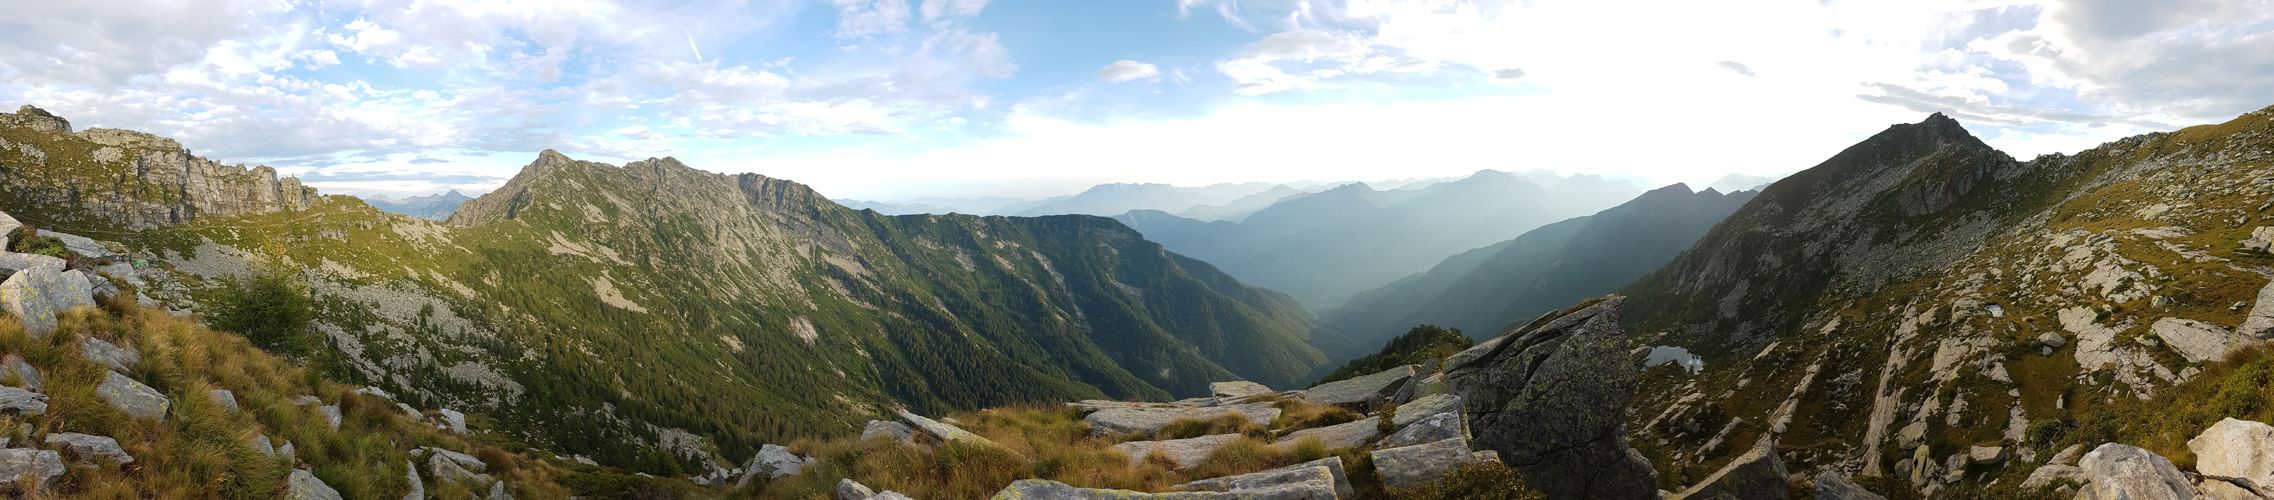 schönes Breitbildfoto mit Blick über das Valle del Salto hinaus zu den unzähligen Tessiner Bergen